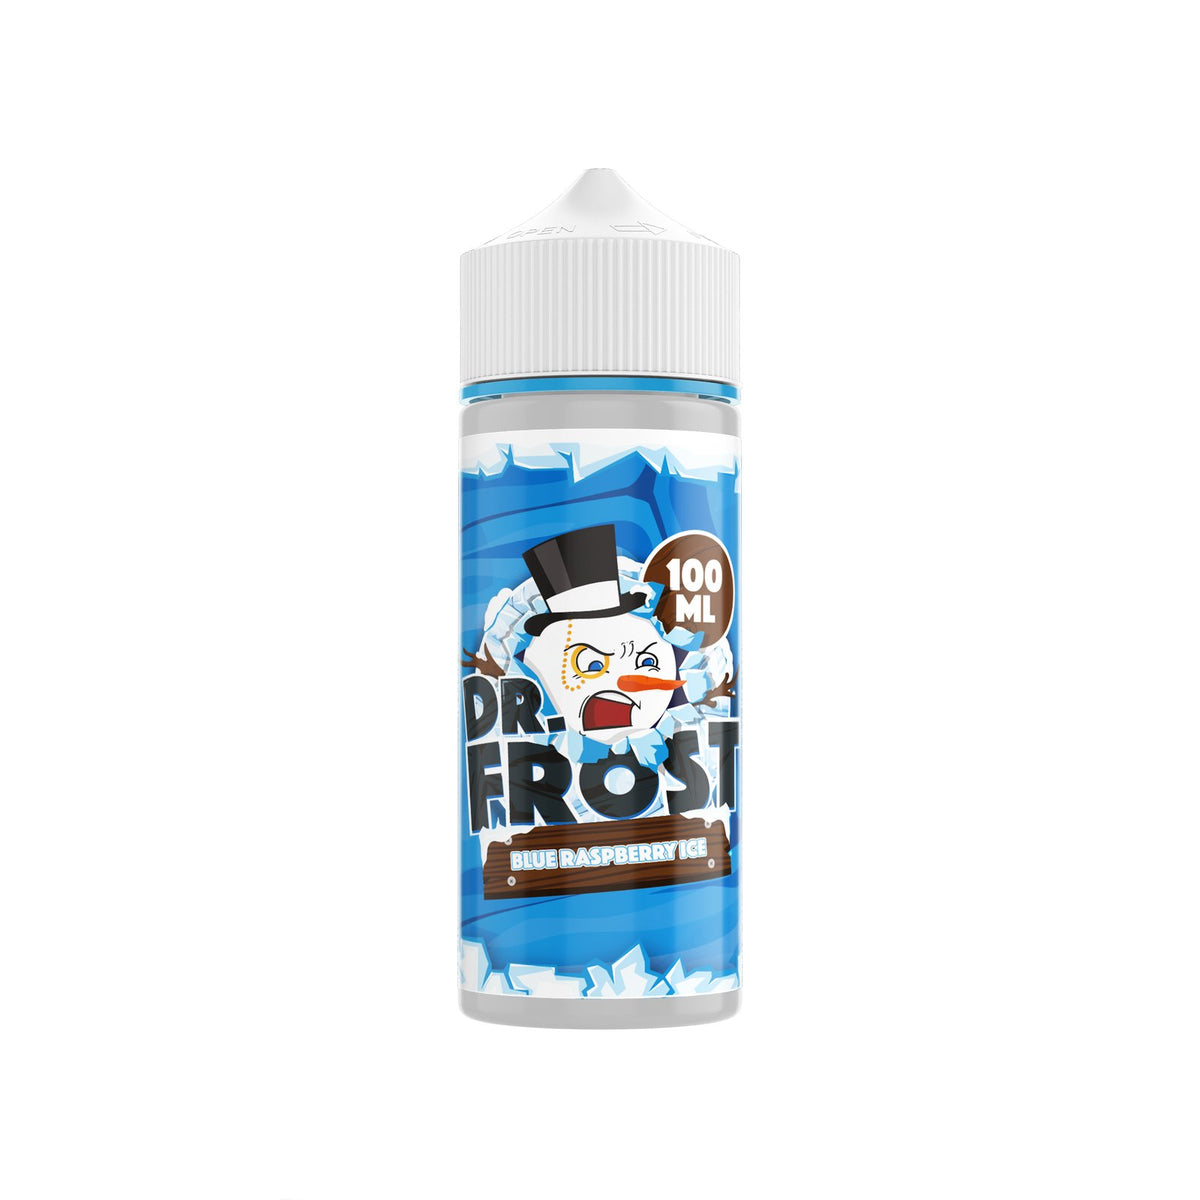 Dr Frost - 100ml Shortfill - Blue Raspberry Ice - E Liquids - Dr Frost - 100ml Shortfill - Blue Raspberry Ice - E Liquids - Vape Fast UK